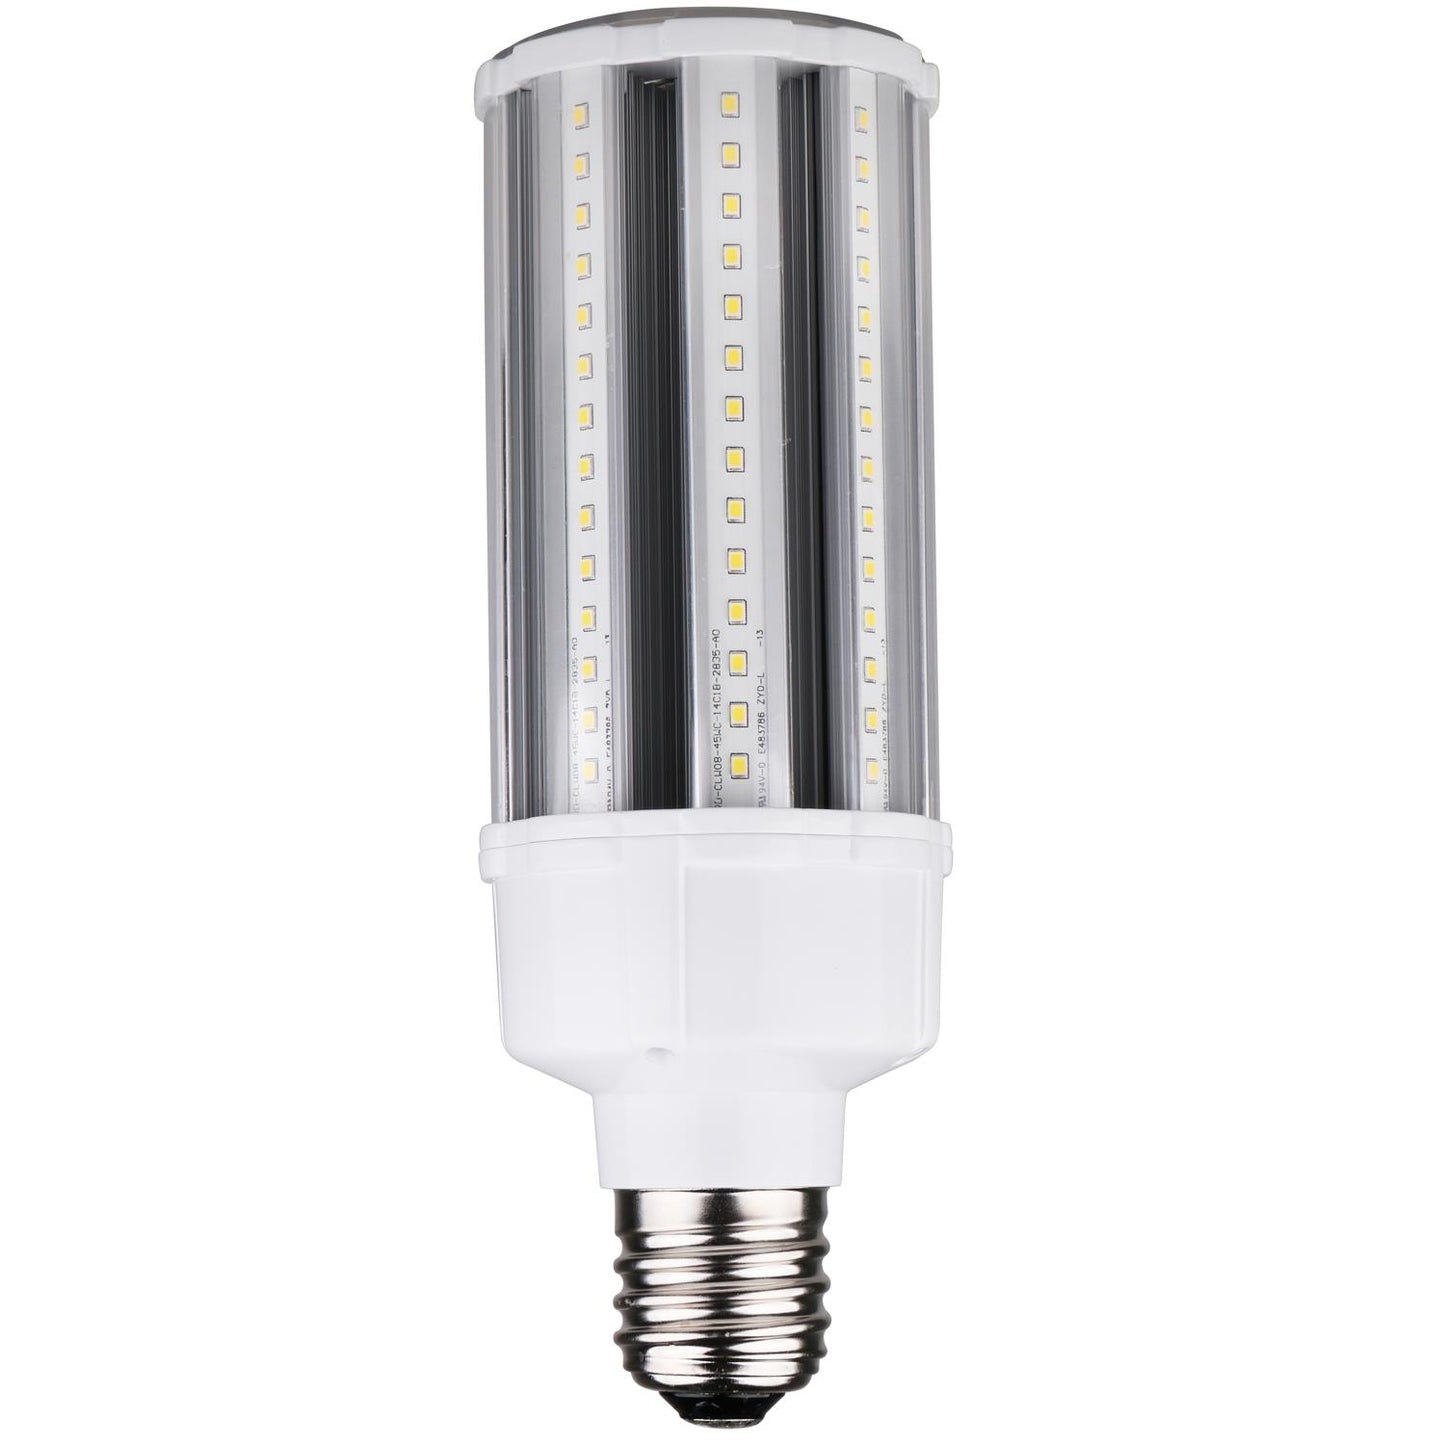 CC/LED/36W/E26-E39/MV/50K/V3 36 watt, Corn lamp, base, Super White